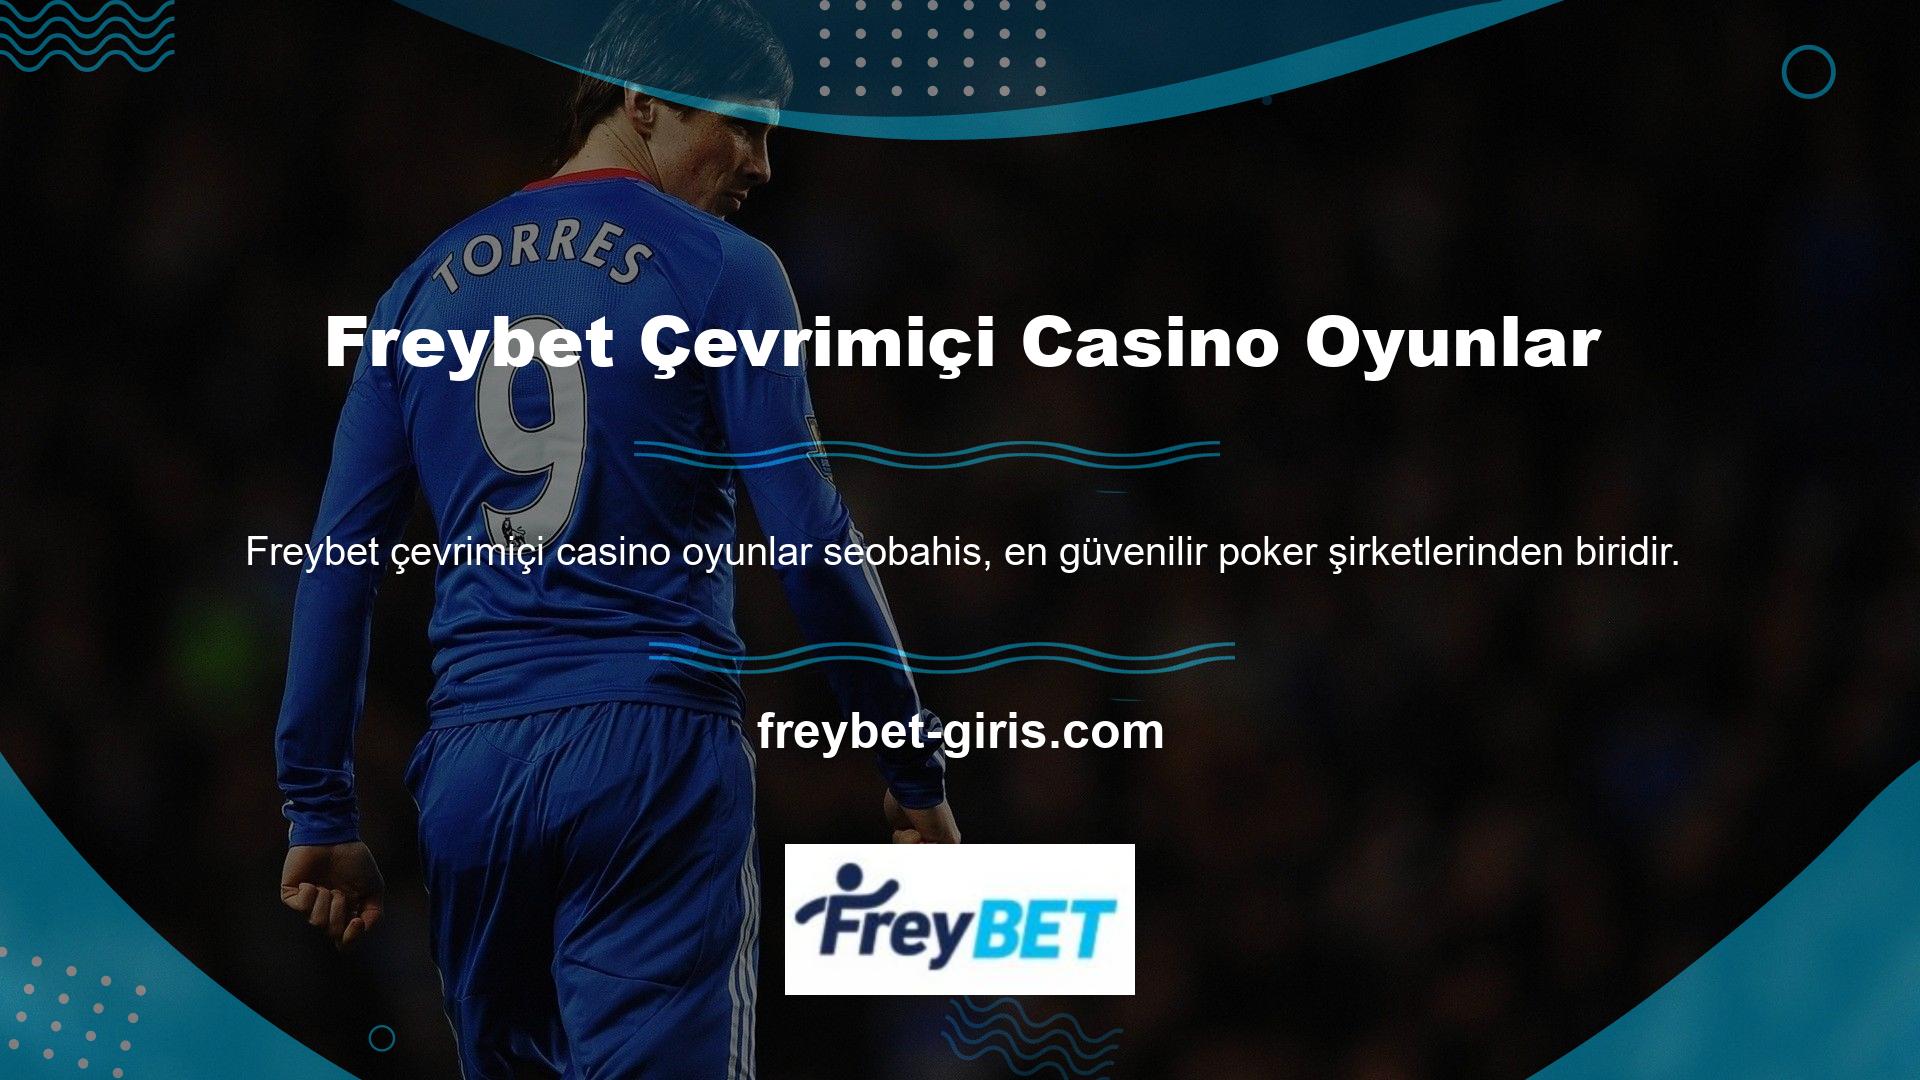 Freybet, çevrimiçi casino oyunlarıyla ilgili her şeye ilgi duyan casino oyuncularının favori ve favori casino sitelerinden biridir